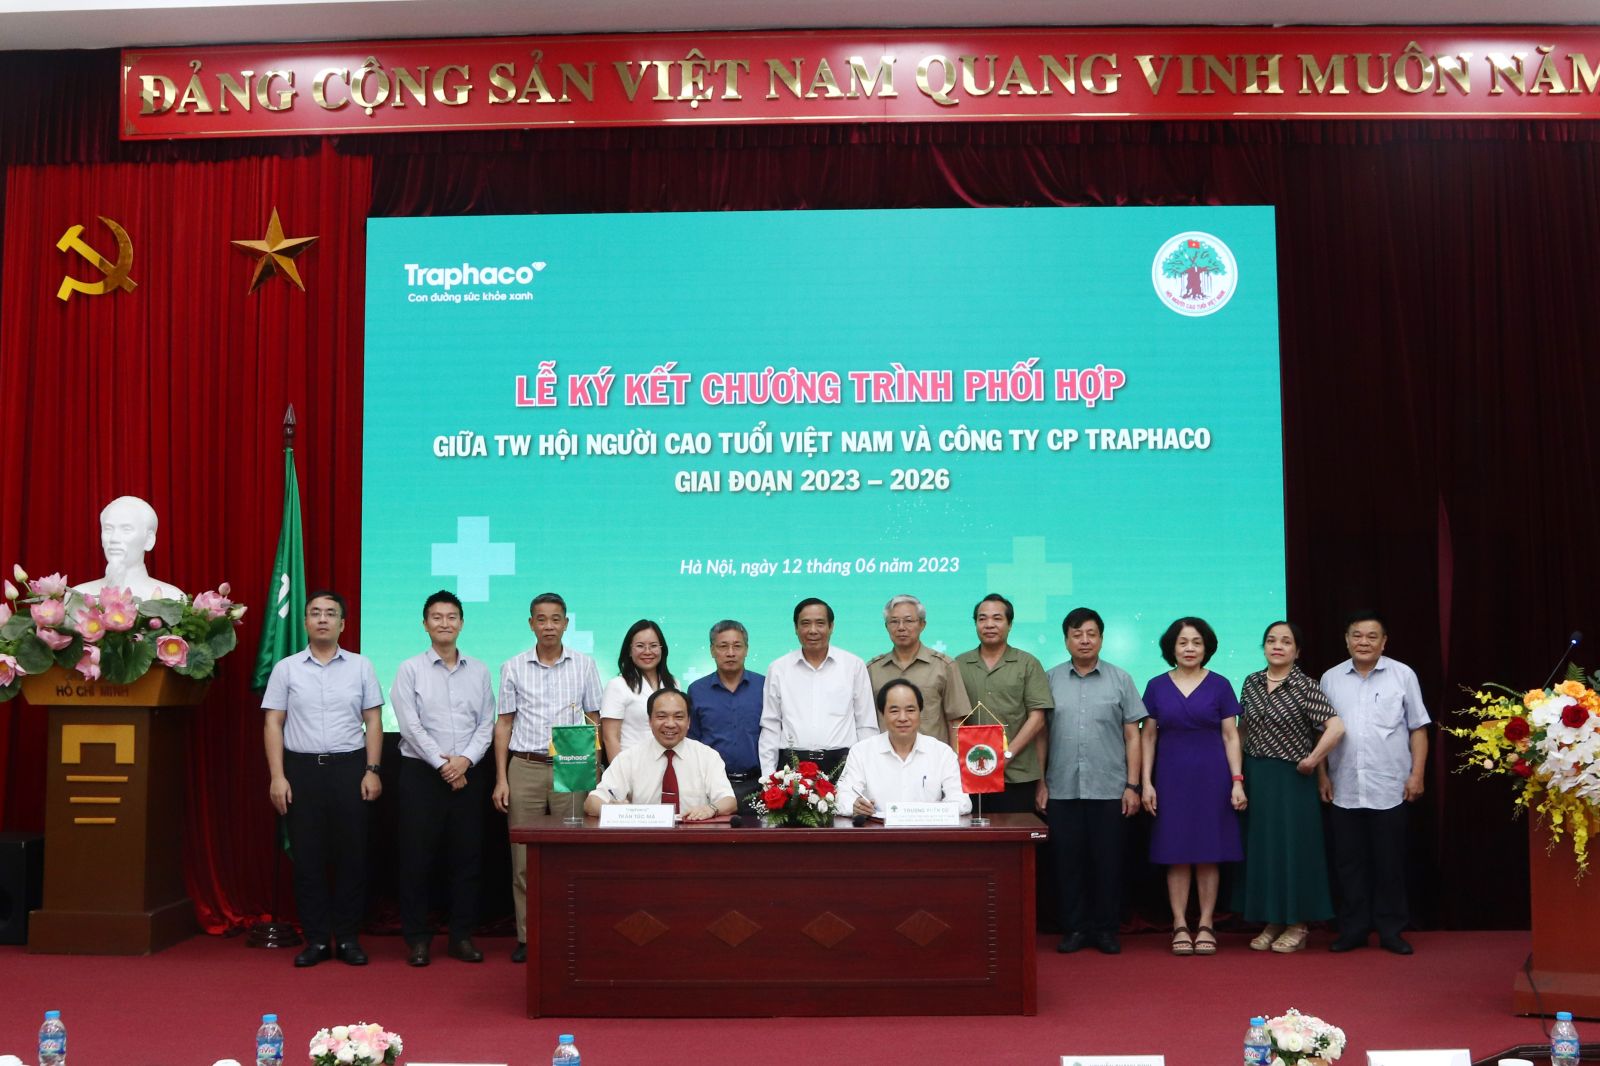 Hội Người cao tuổi Việt Nam và Traphaco đã thống nhất nội dung phối hợp thực hiện nhiều hoạt động, cụ thể: